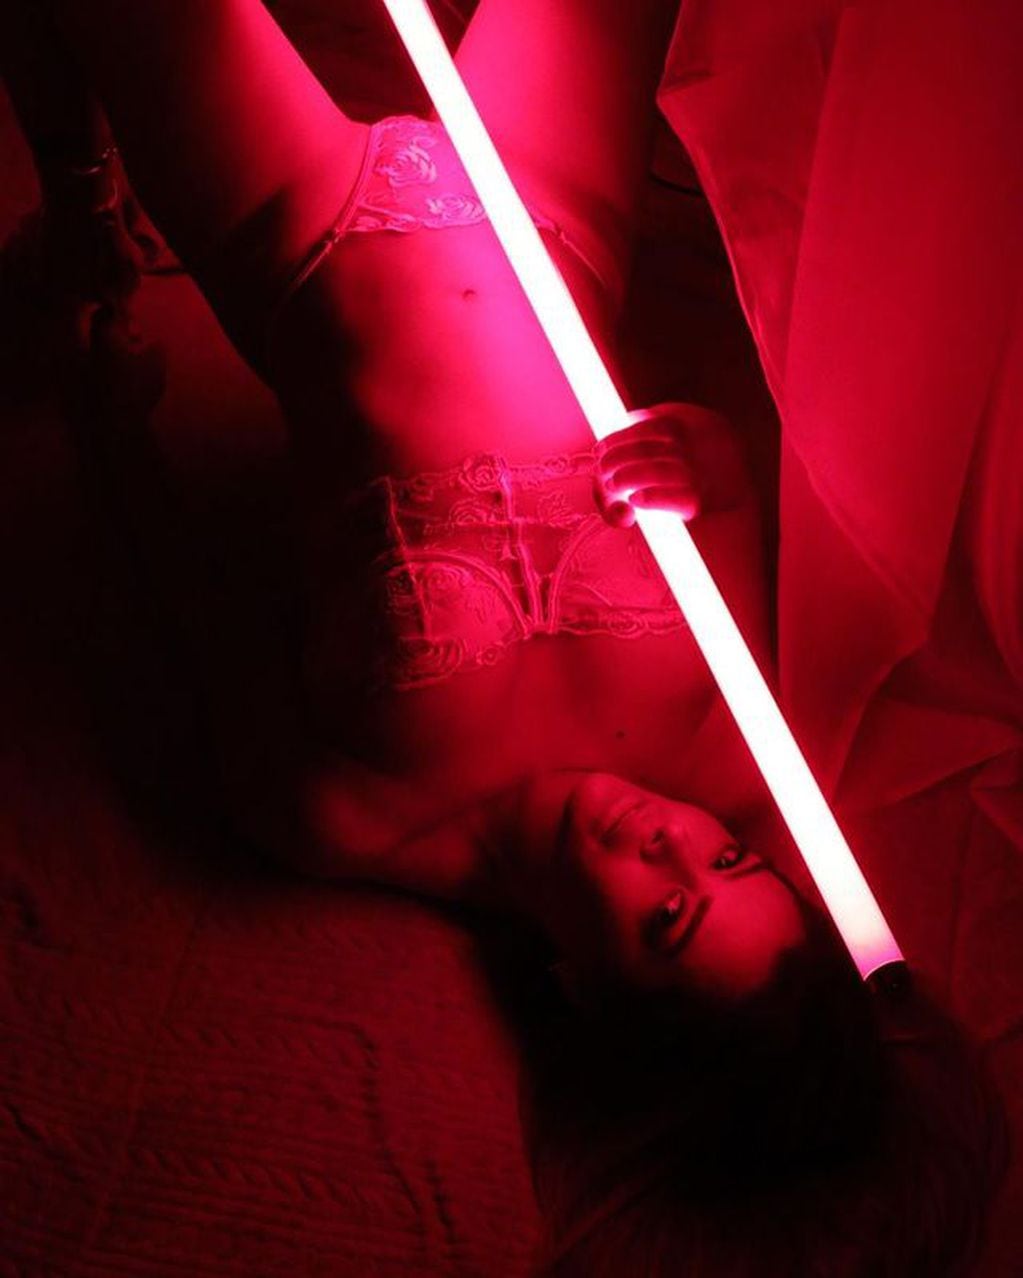 Larissa Riquelme jugó con la iluminación y posó con sensualidad para las redes.